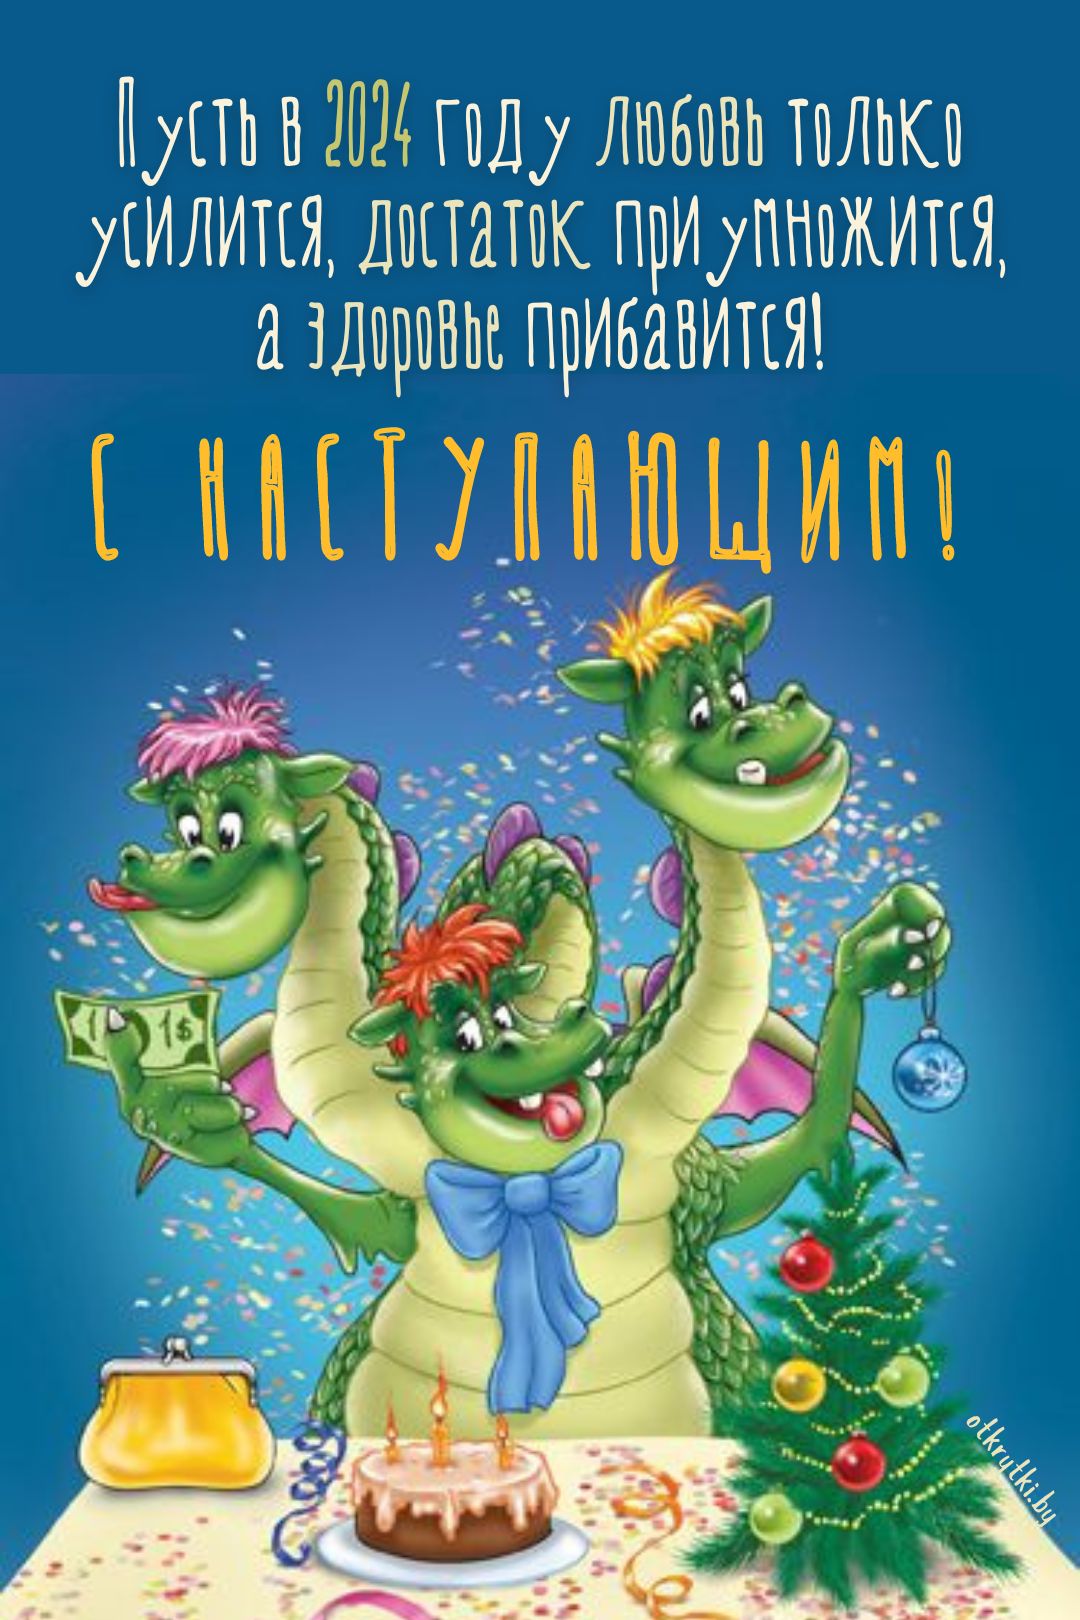 Веселая открытка с Новым годом с драконом